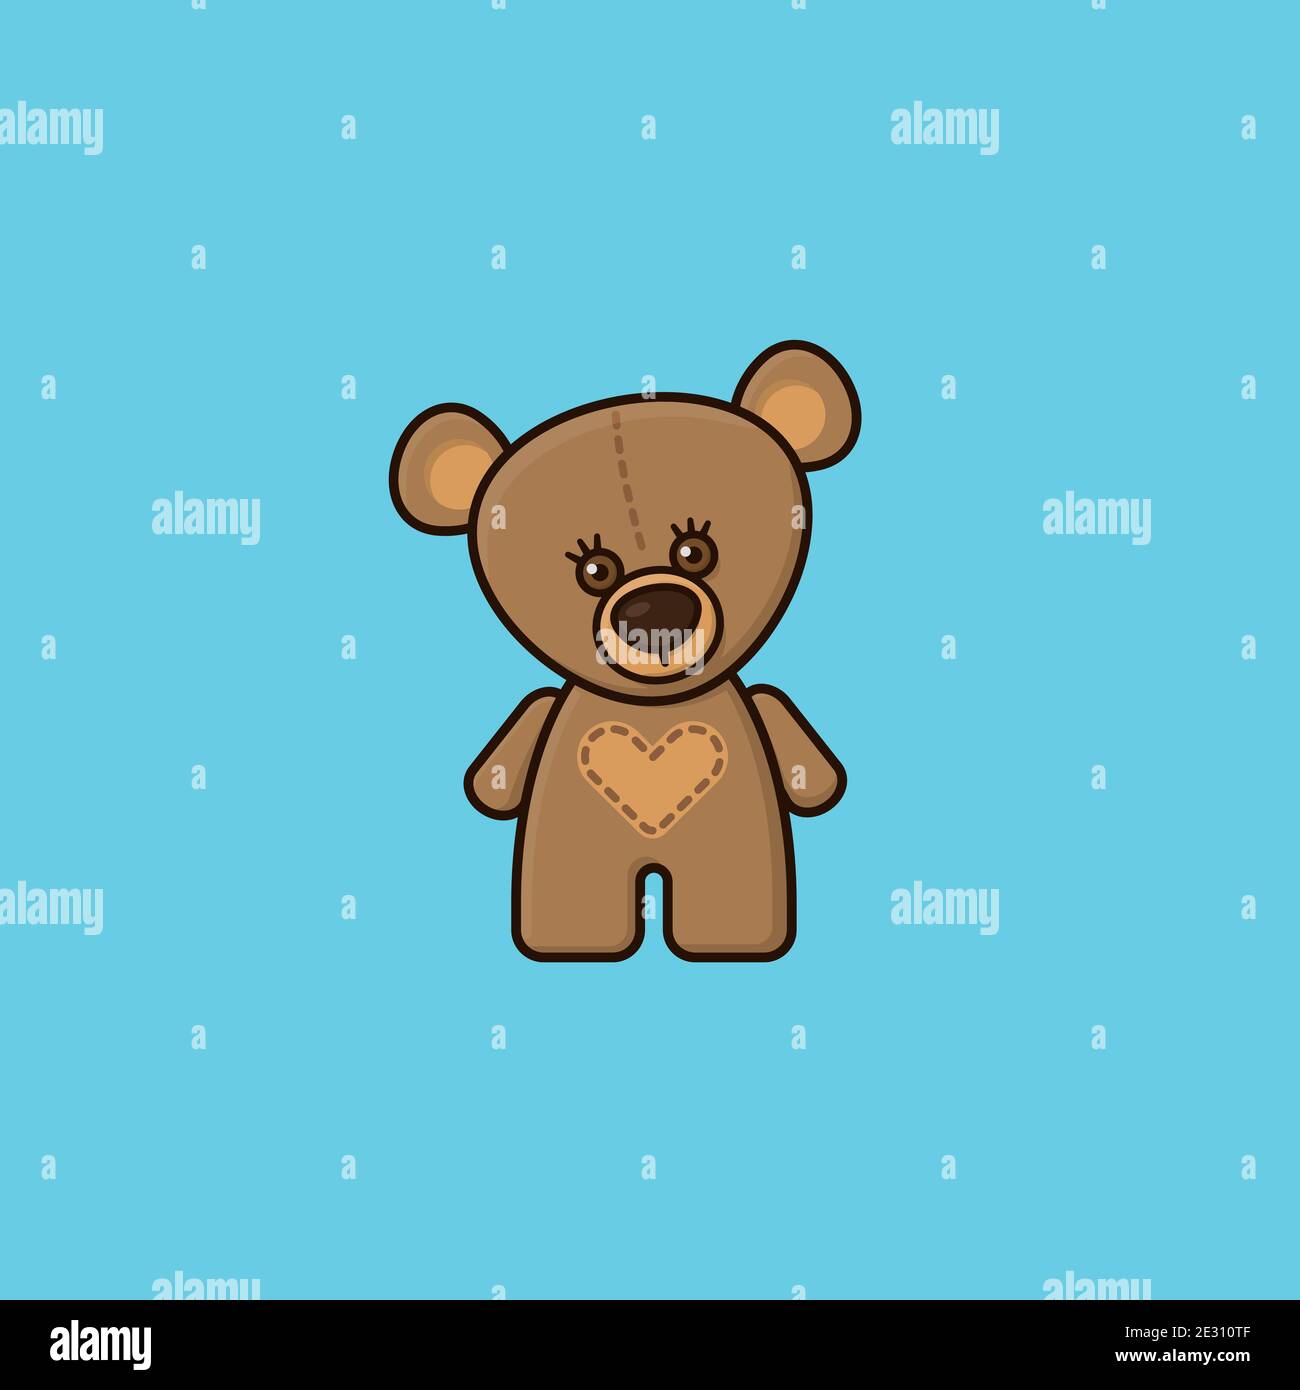 Cute brown teddy bear vector illustration  for Teddy bear Day on September 9 Stock Vector